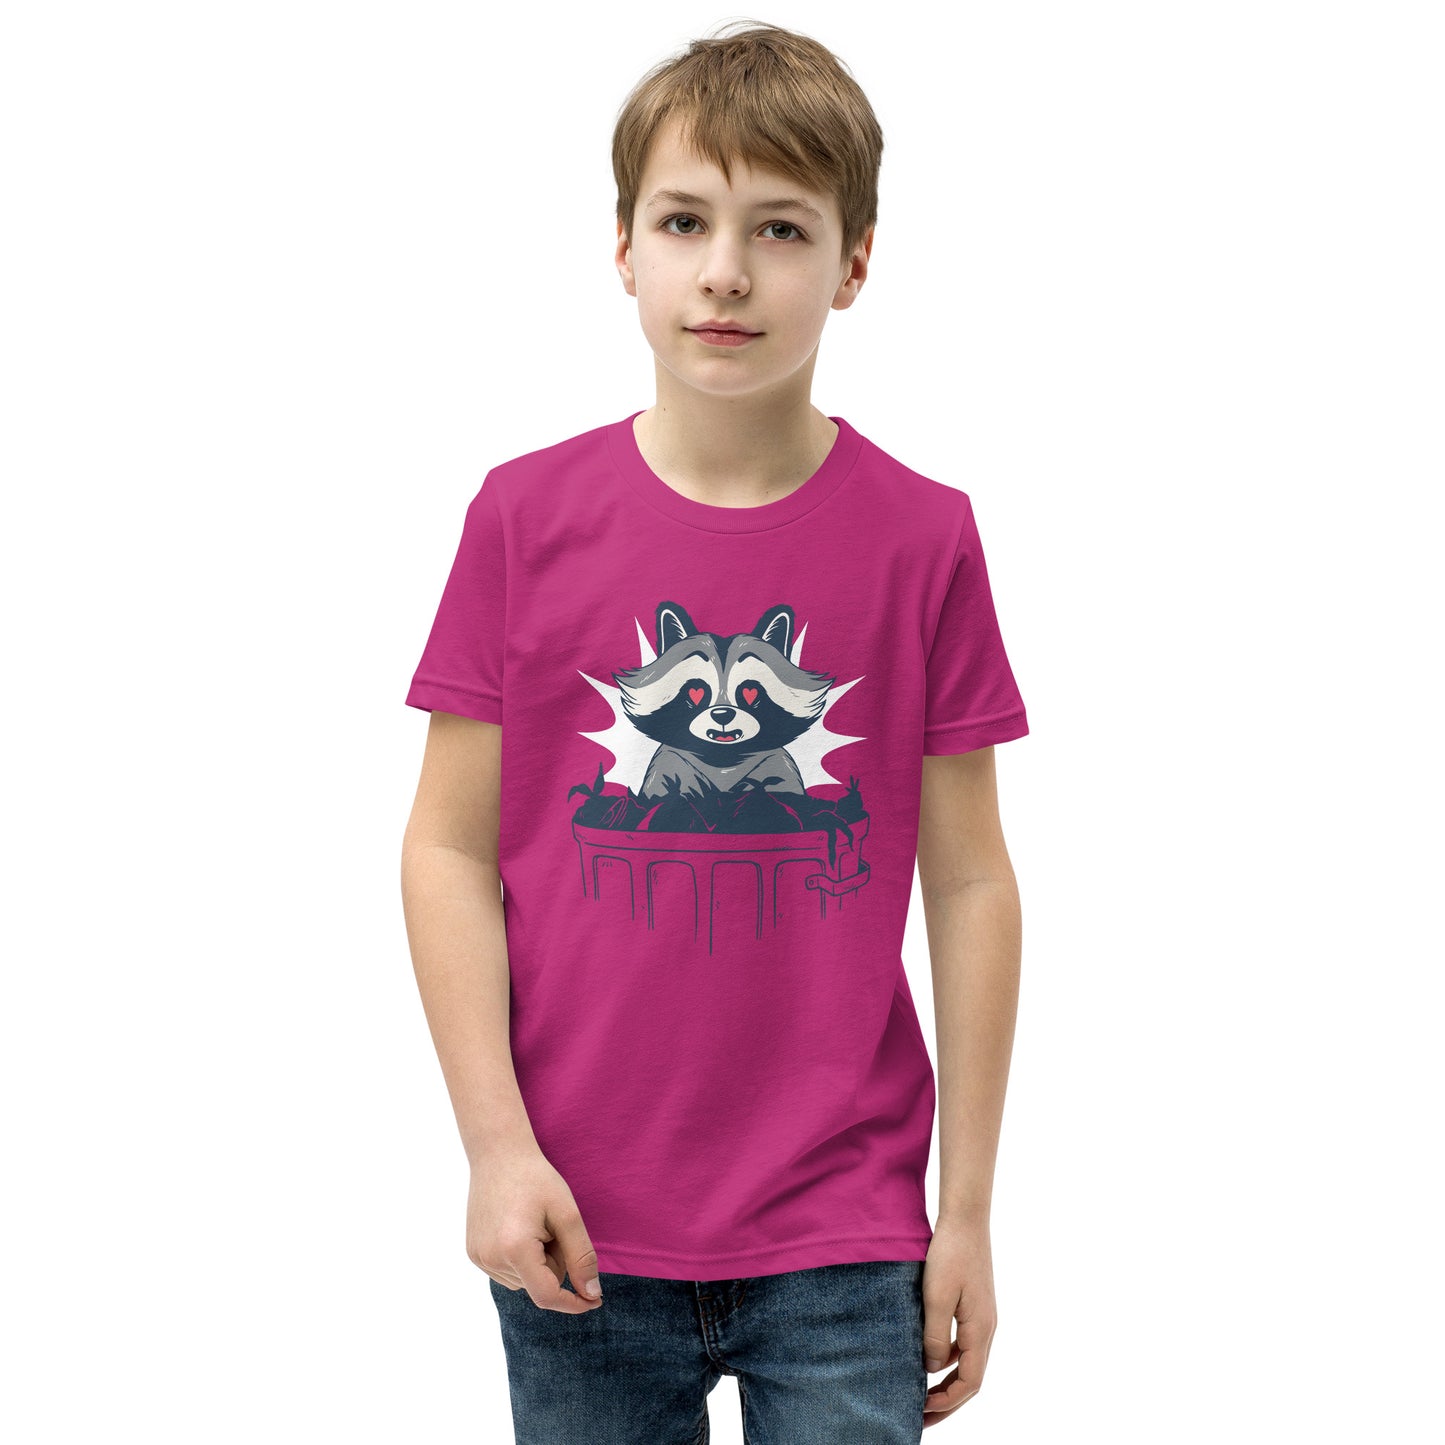 Trash Panda Youth Short Sleeve T-Shirt